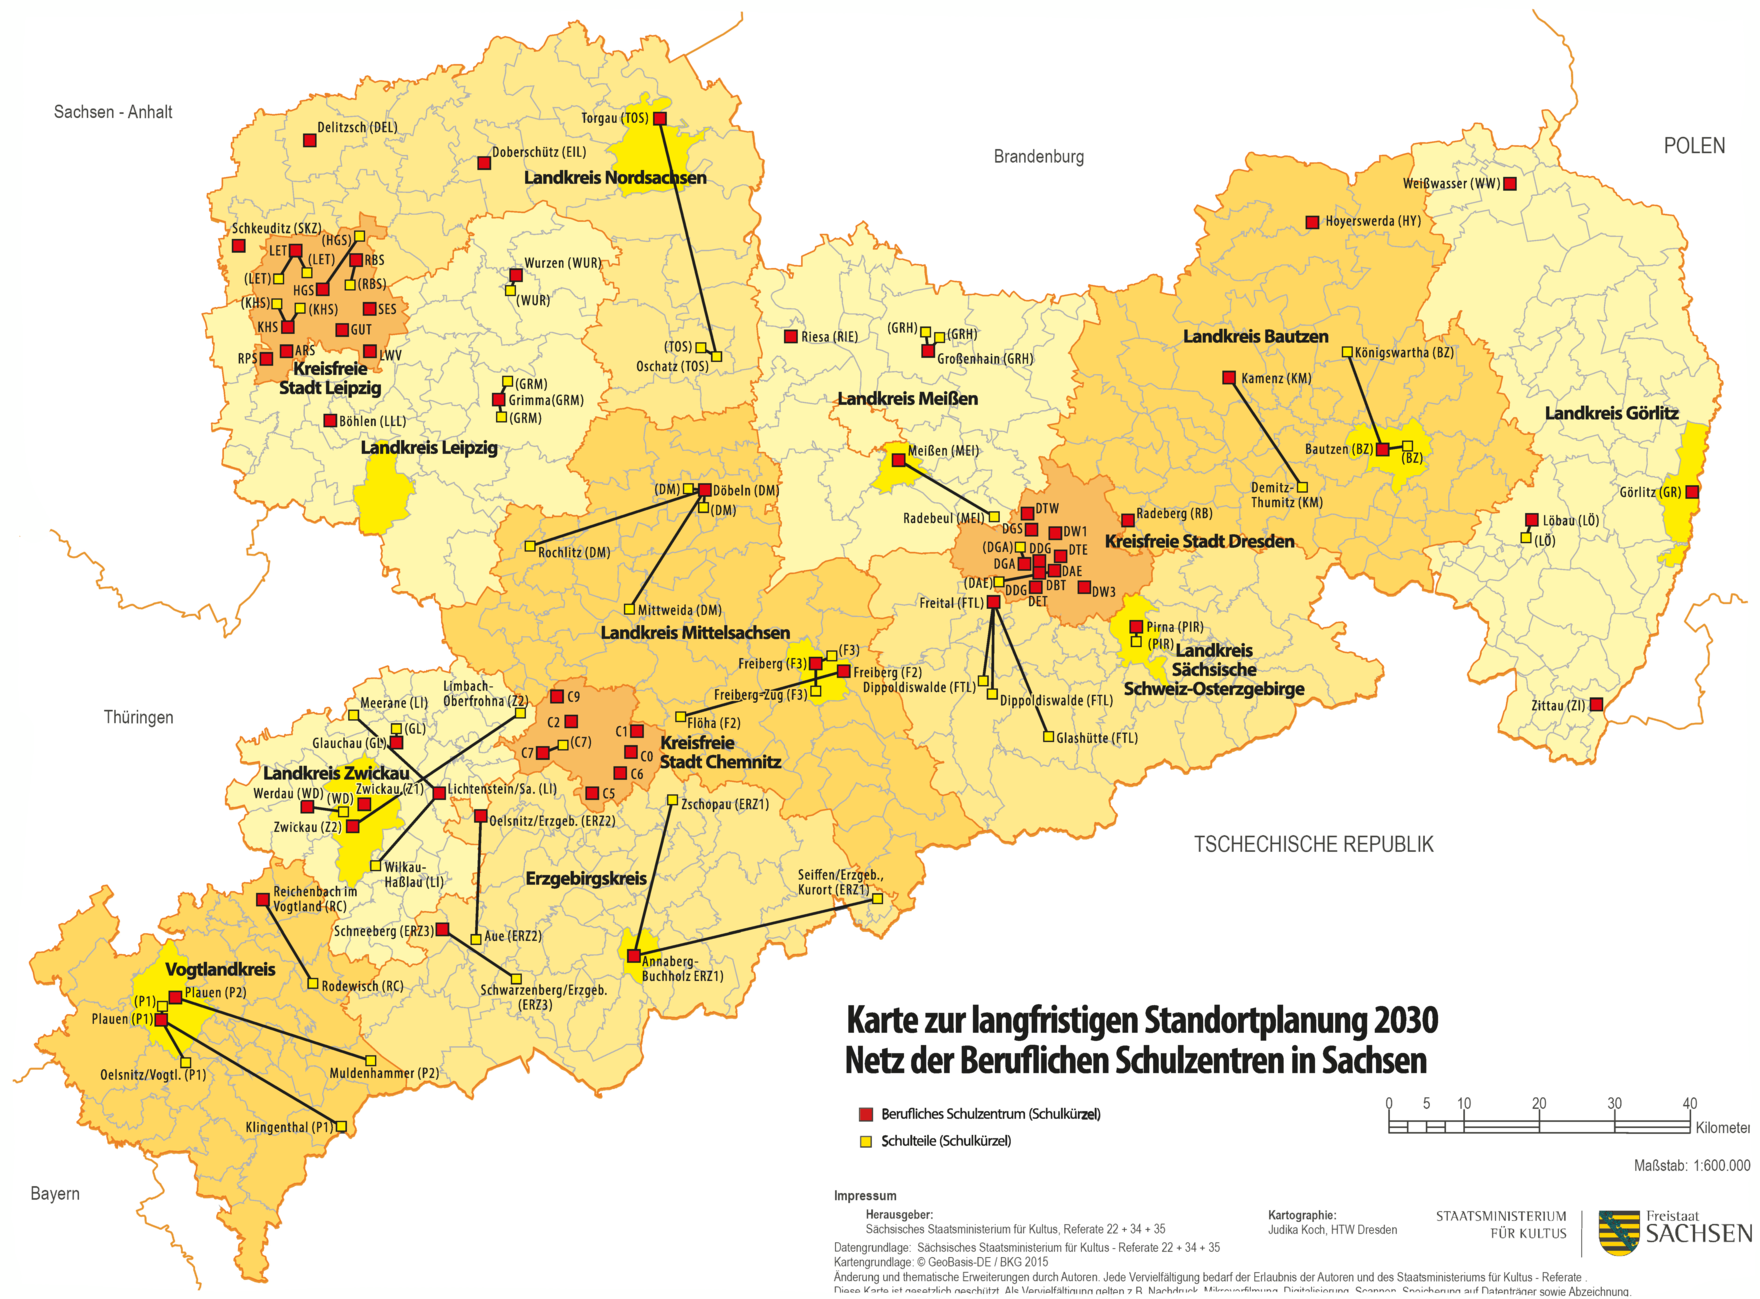 Netz der Beruflichen Schulzentren in Sachsen